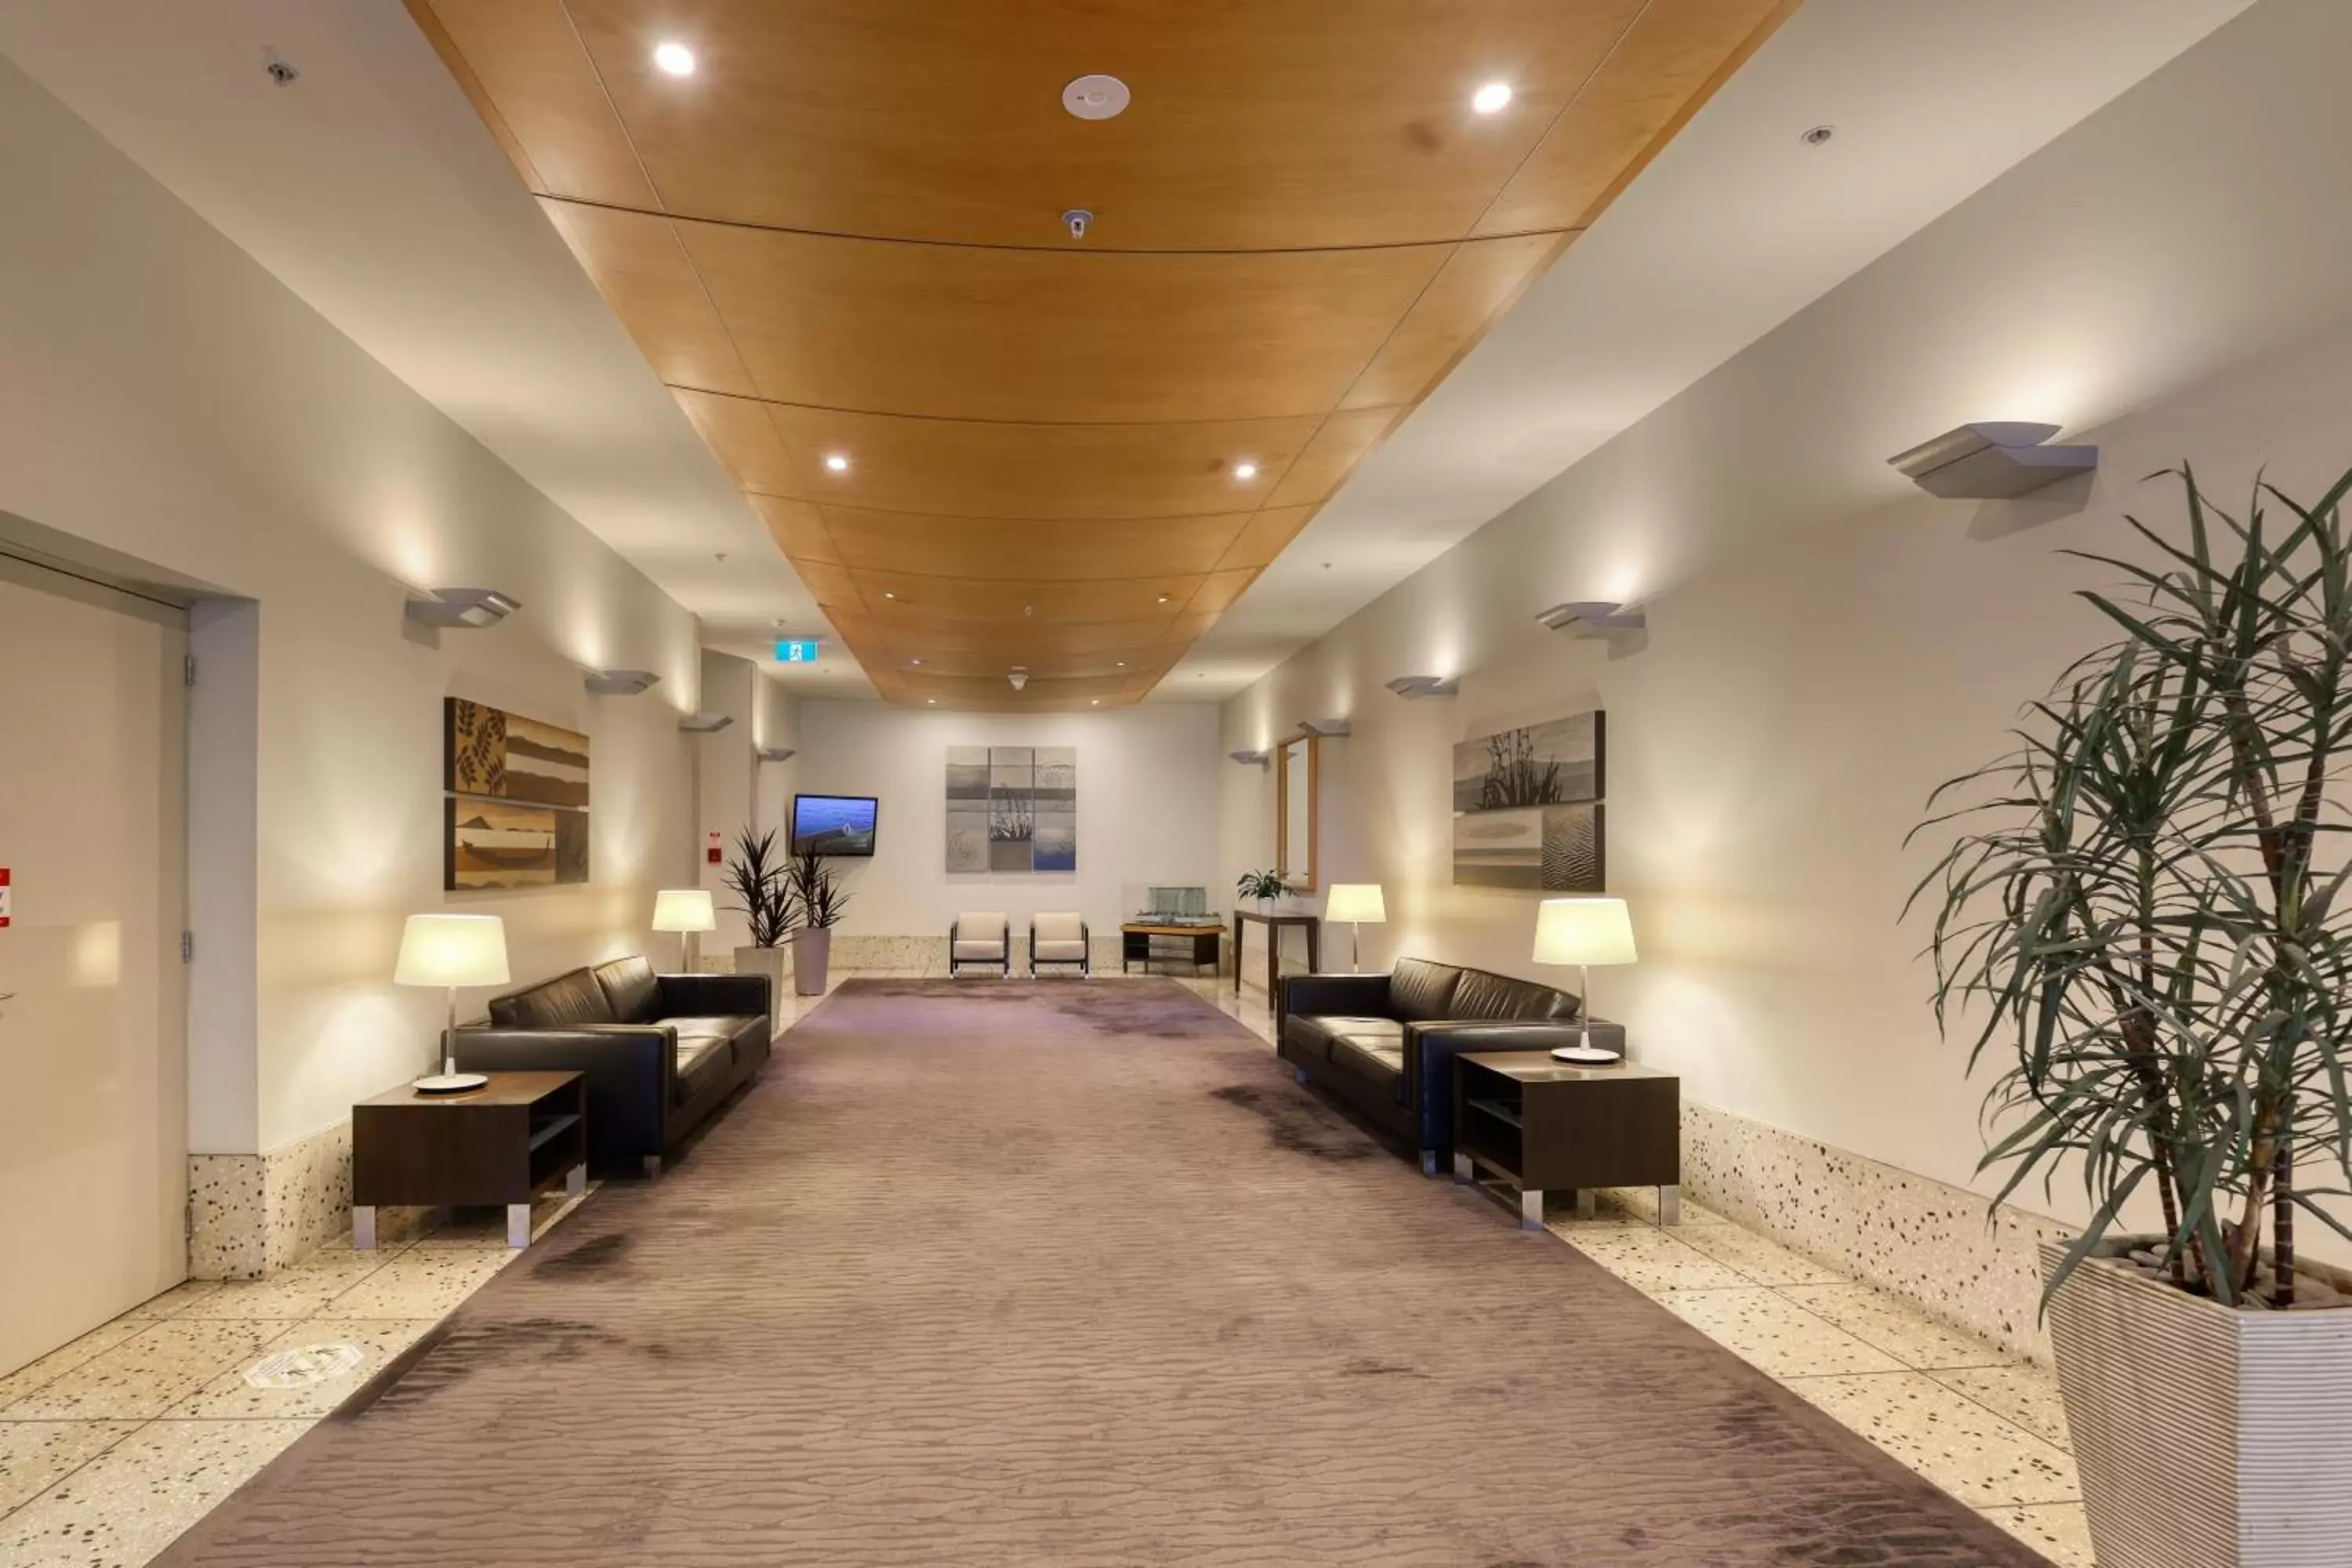 Lobby or reception in Ramada Suites by Wyndham Nautilus Orewa